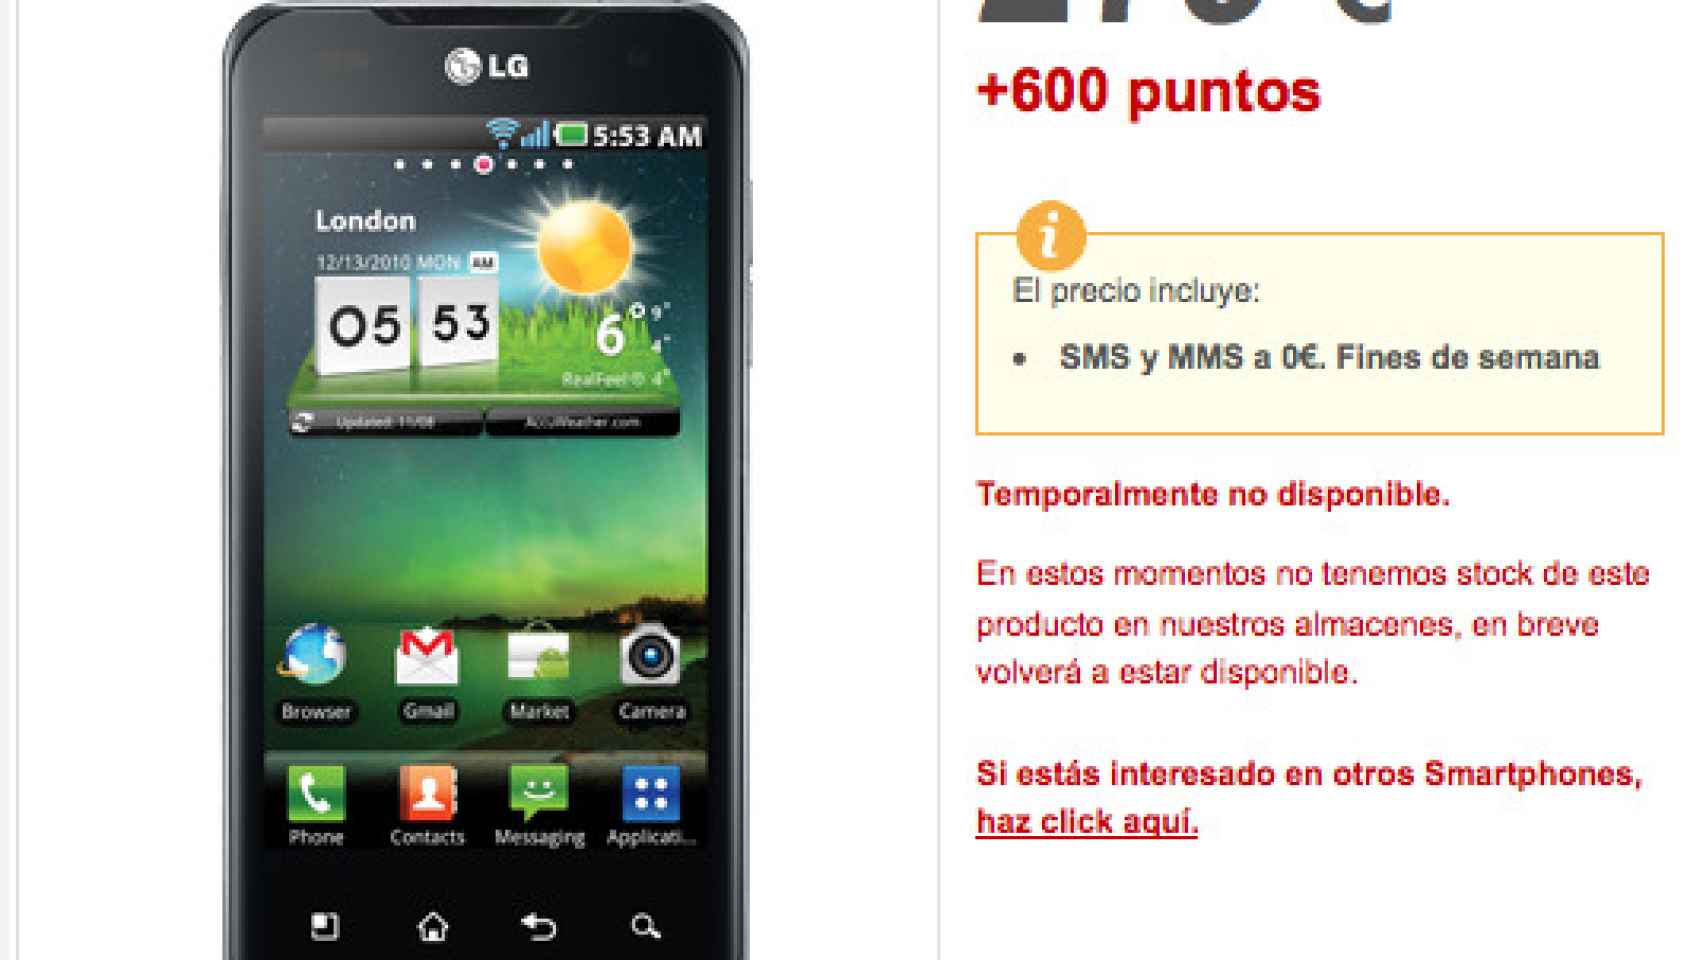 Filtrados los terminales y precios del LG Optimus 2x, Xperia Arc y Xperia Play en la web de Vodafone